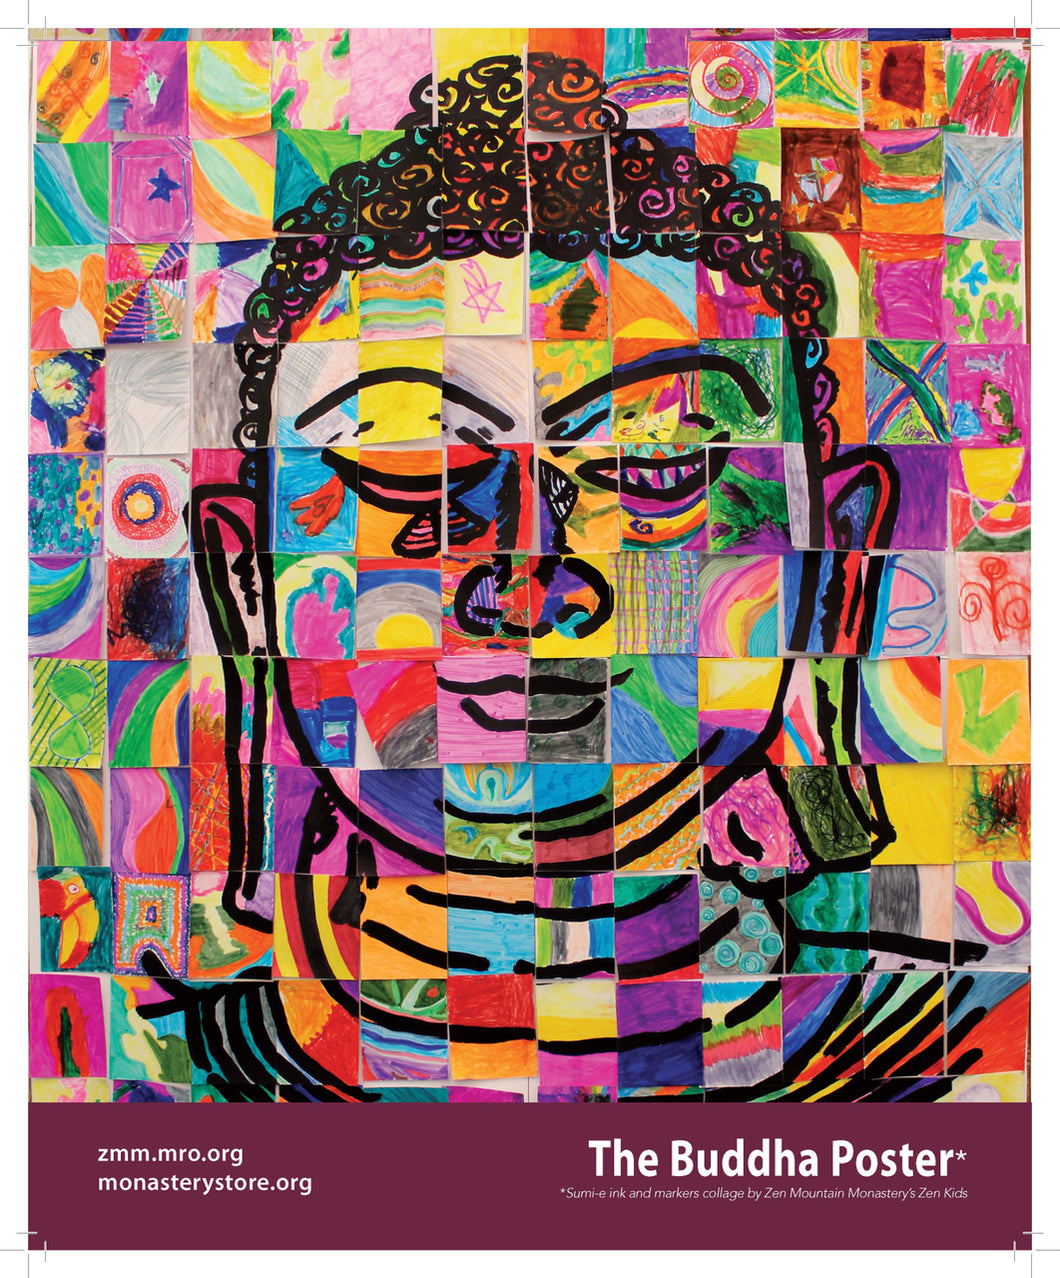 Mosaic Buddha Store The Monastery - Poster